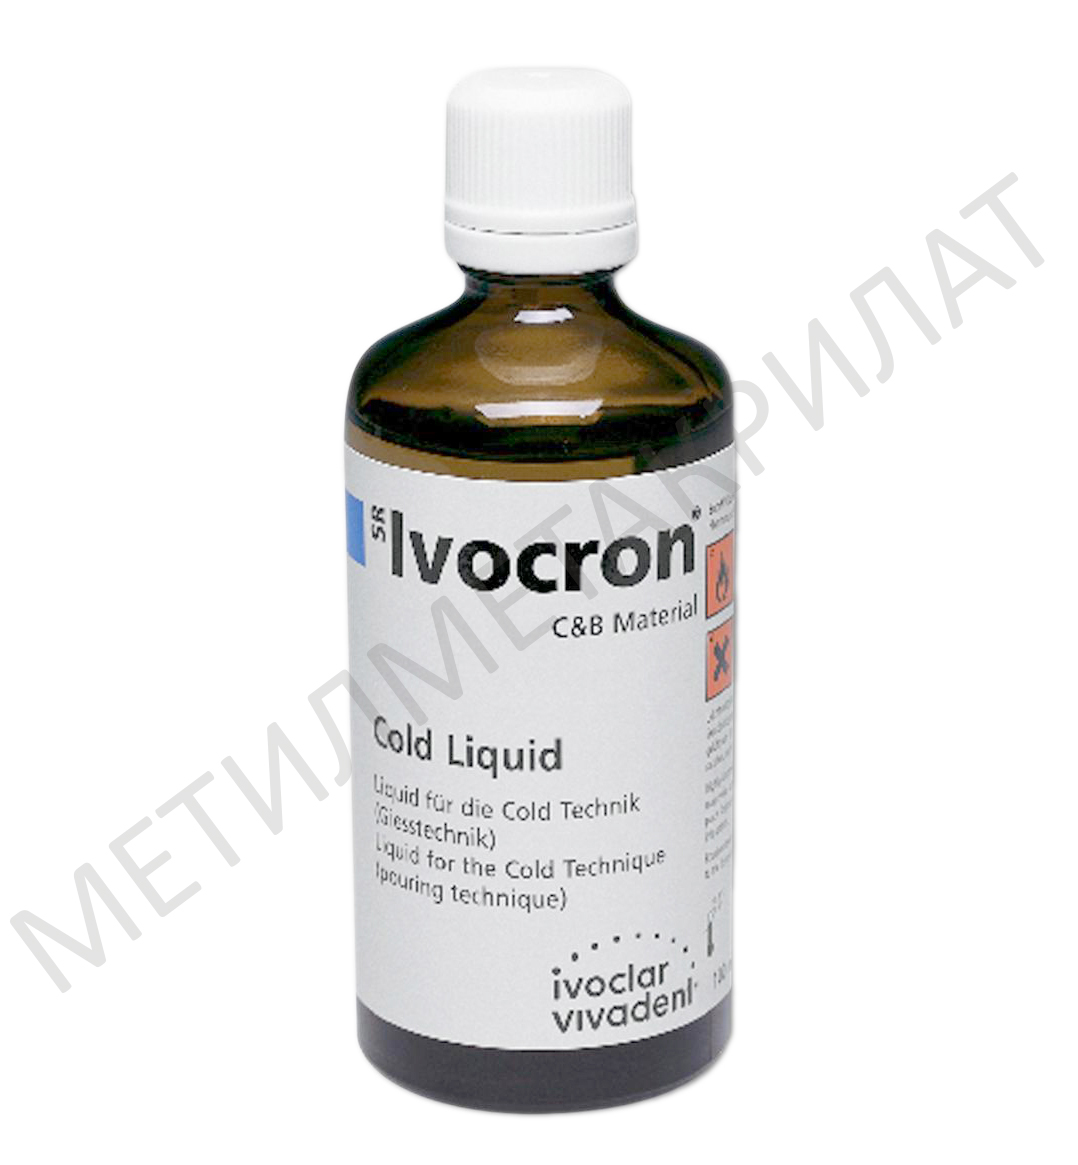 Жидкость SR Ivocron Cold Liquid холодной полимеризации (100 мл) Ivoclar Vivadent 550080